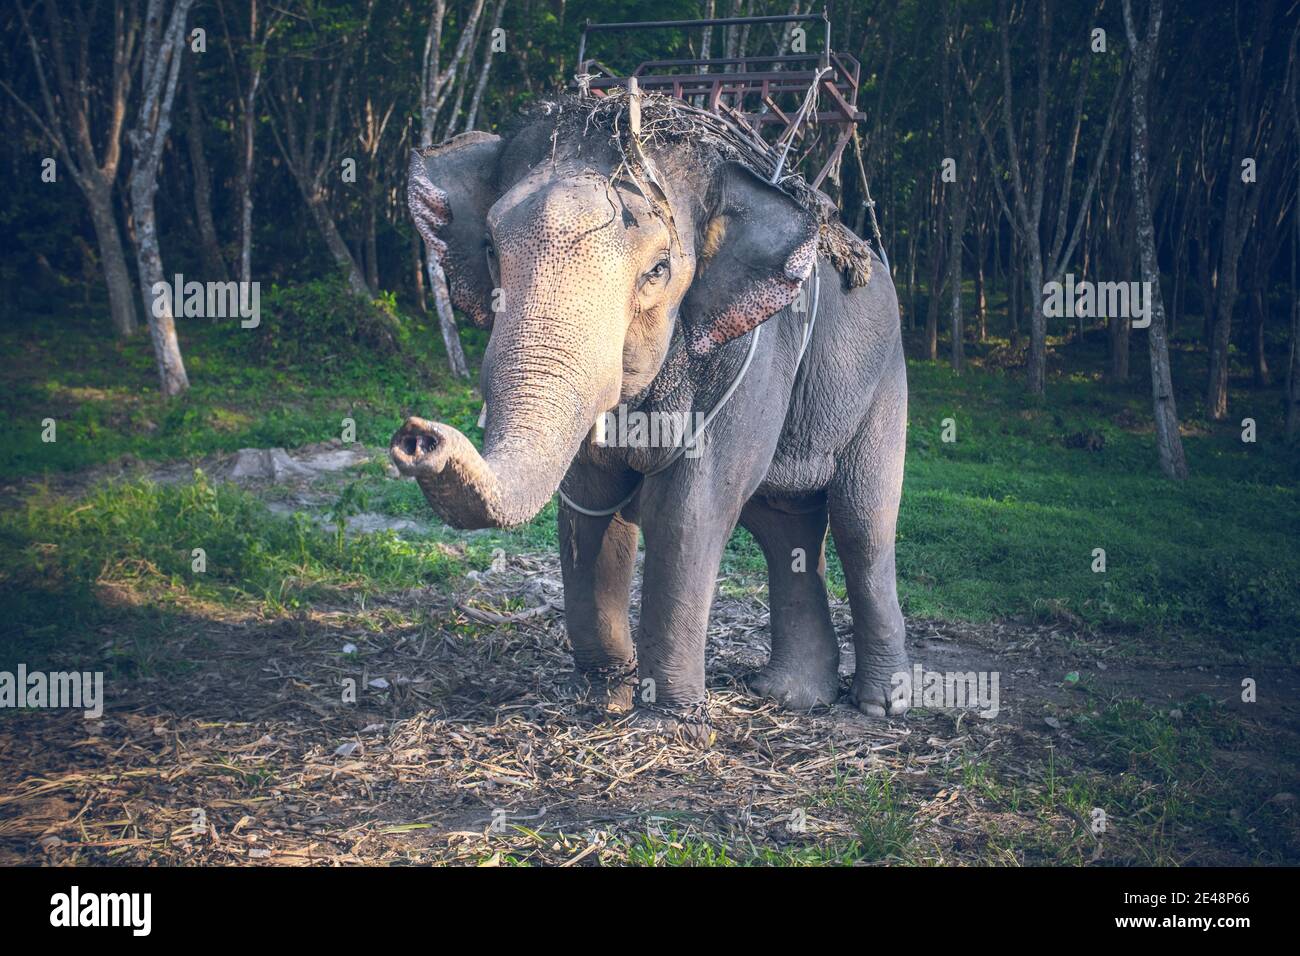 Thailand, Reiten Elefant schaut Kamera auf den Hintergrund des Dschungels und grünen Grasboden. Exotisches Tier in der wilden Natur Asiens. Epische Landschaft des tropischen Waldes der asiatischen Zuflucht in weichen cineastischen Ton Stockfoto